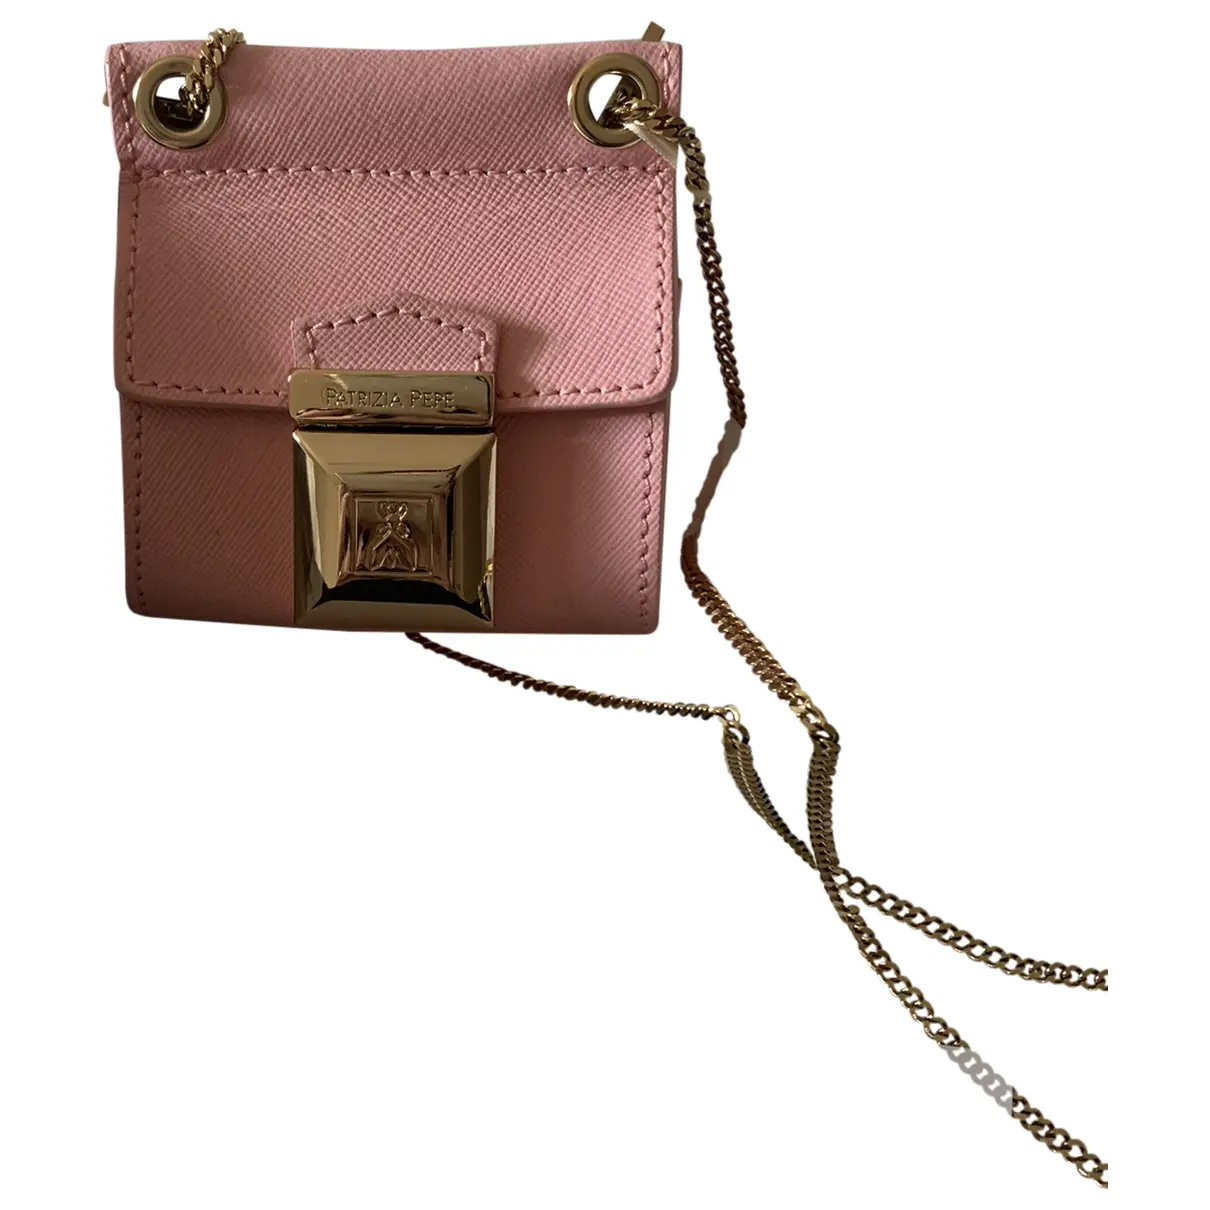 Leather purse Patrizia Pepe